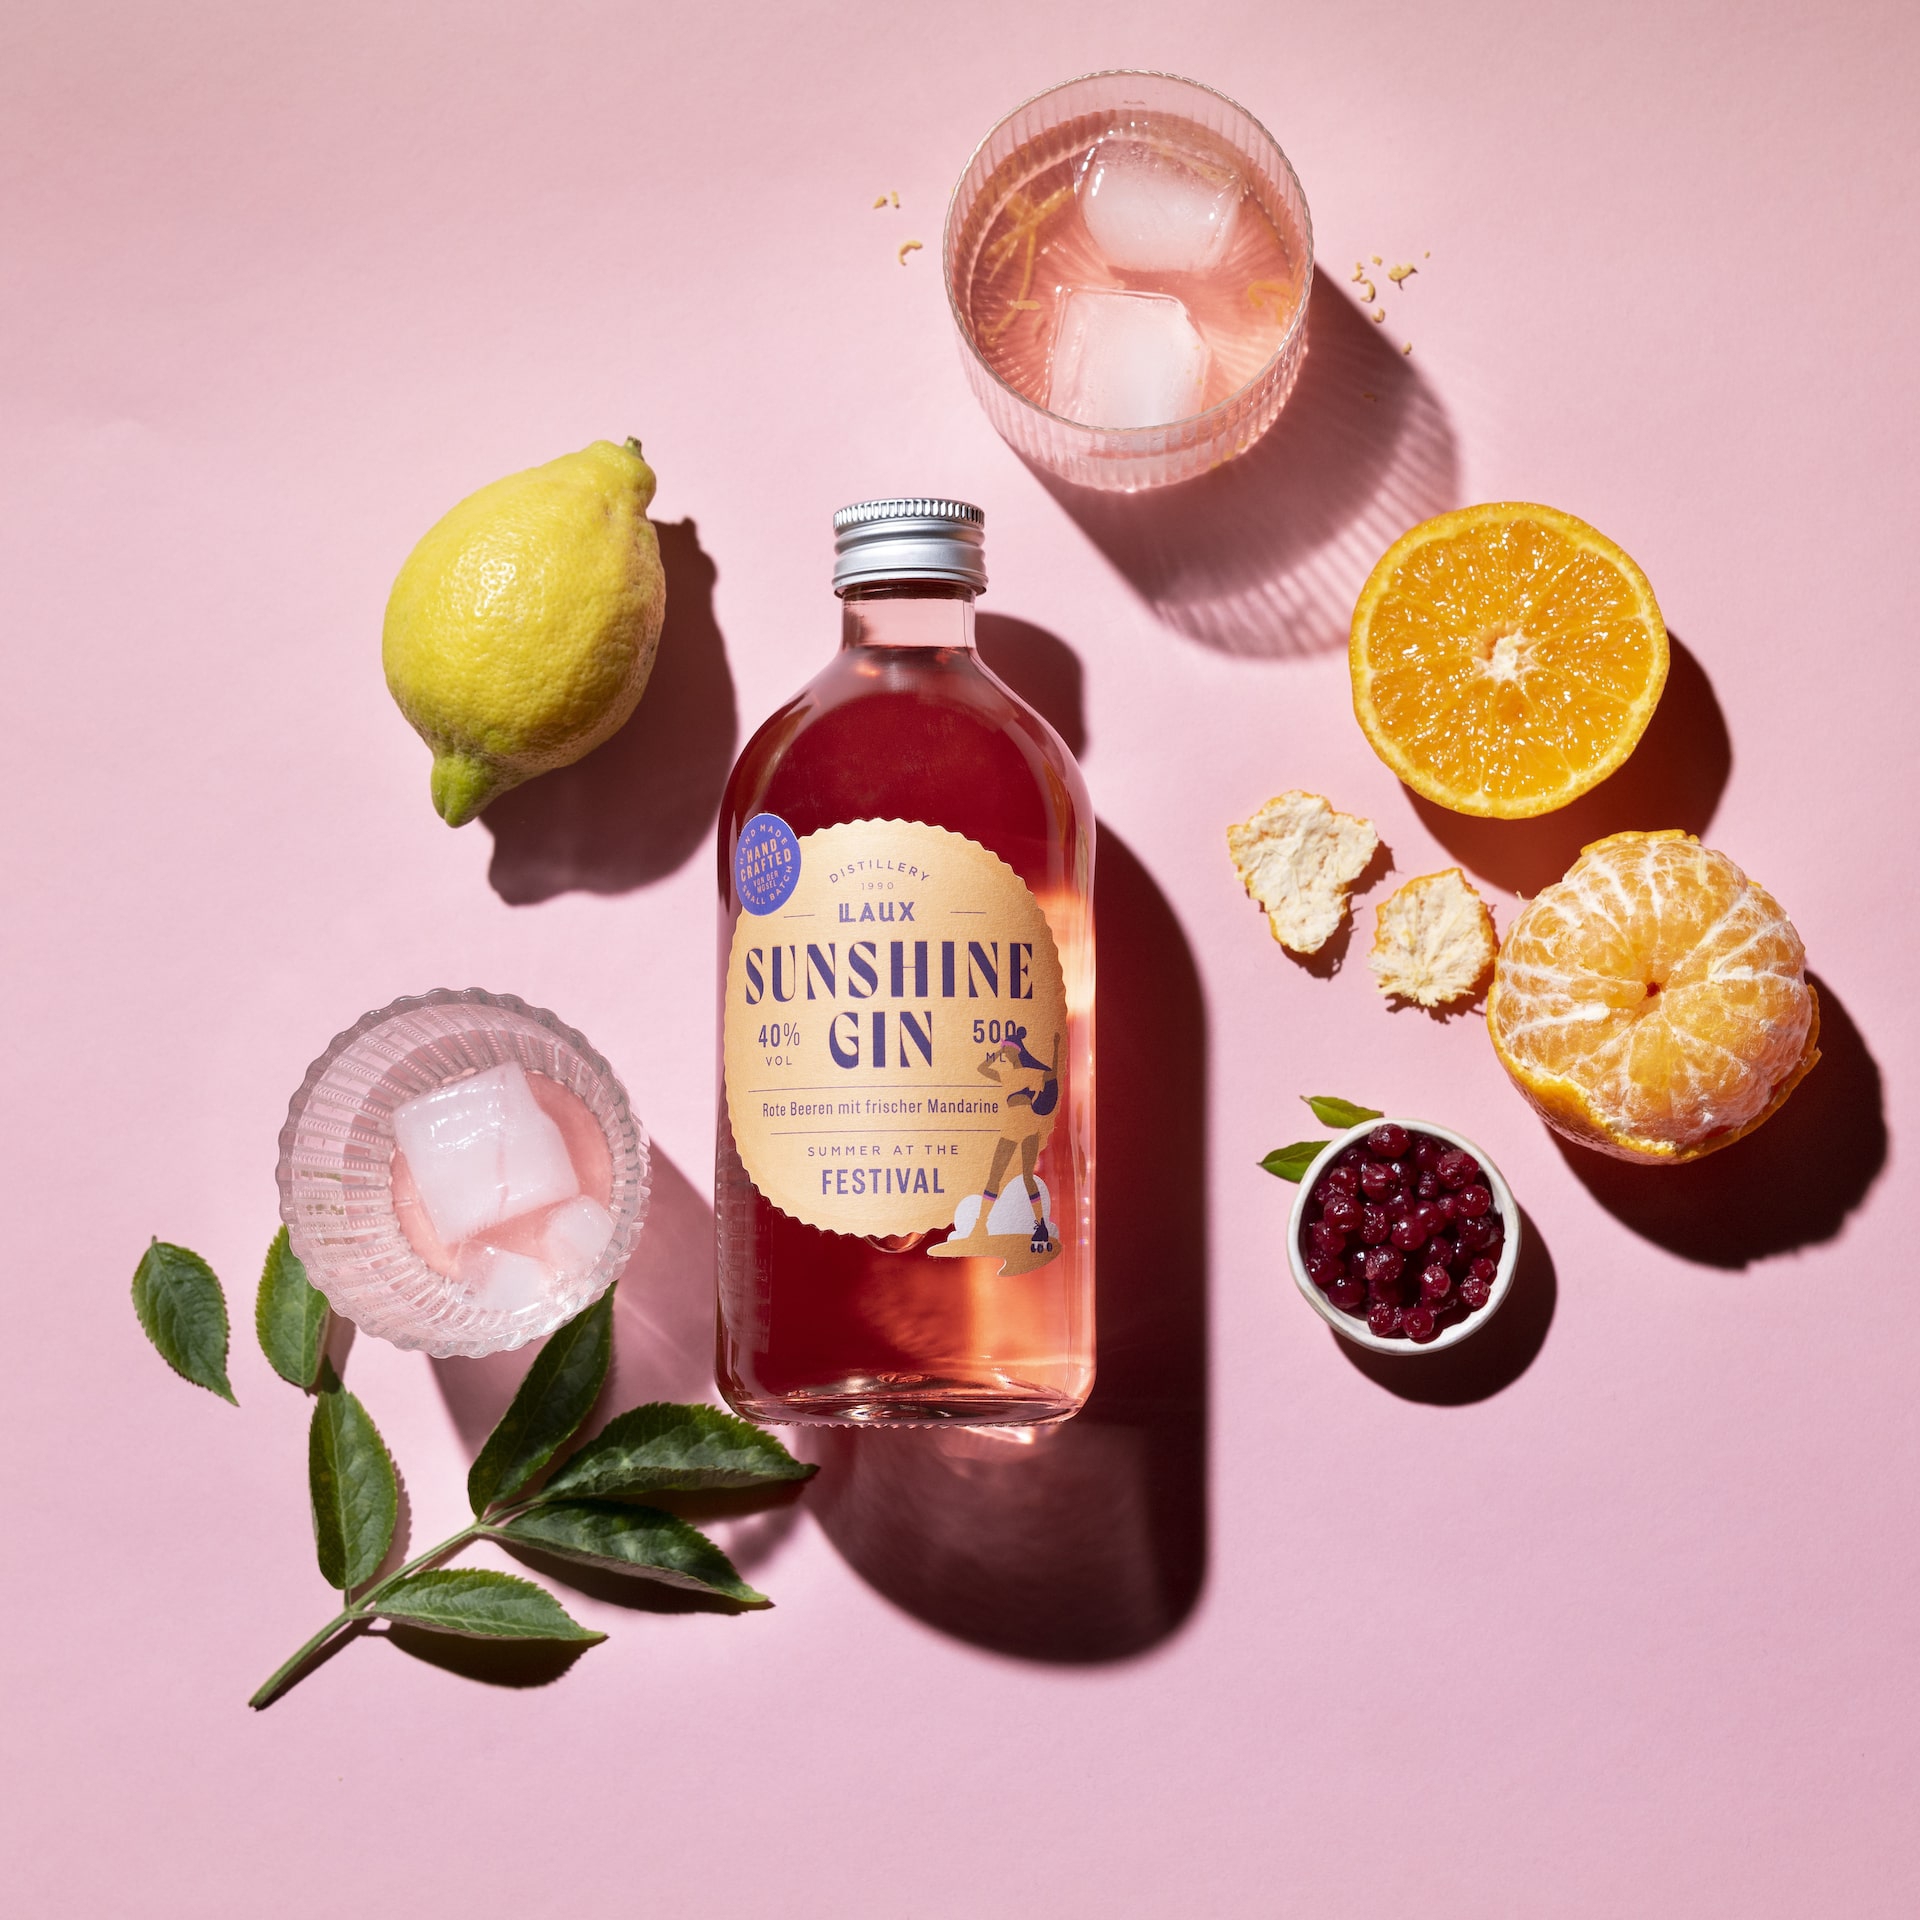 Summer at the Festival fruchtiger Gin Moodfoto auf pinkem HIntergrund